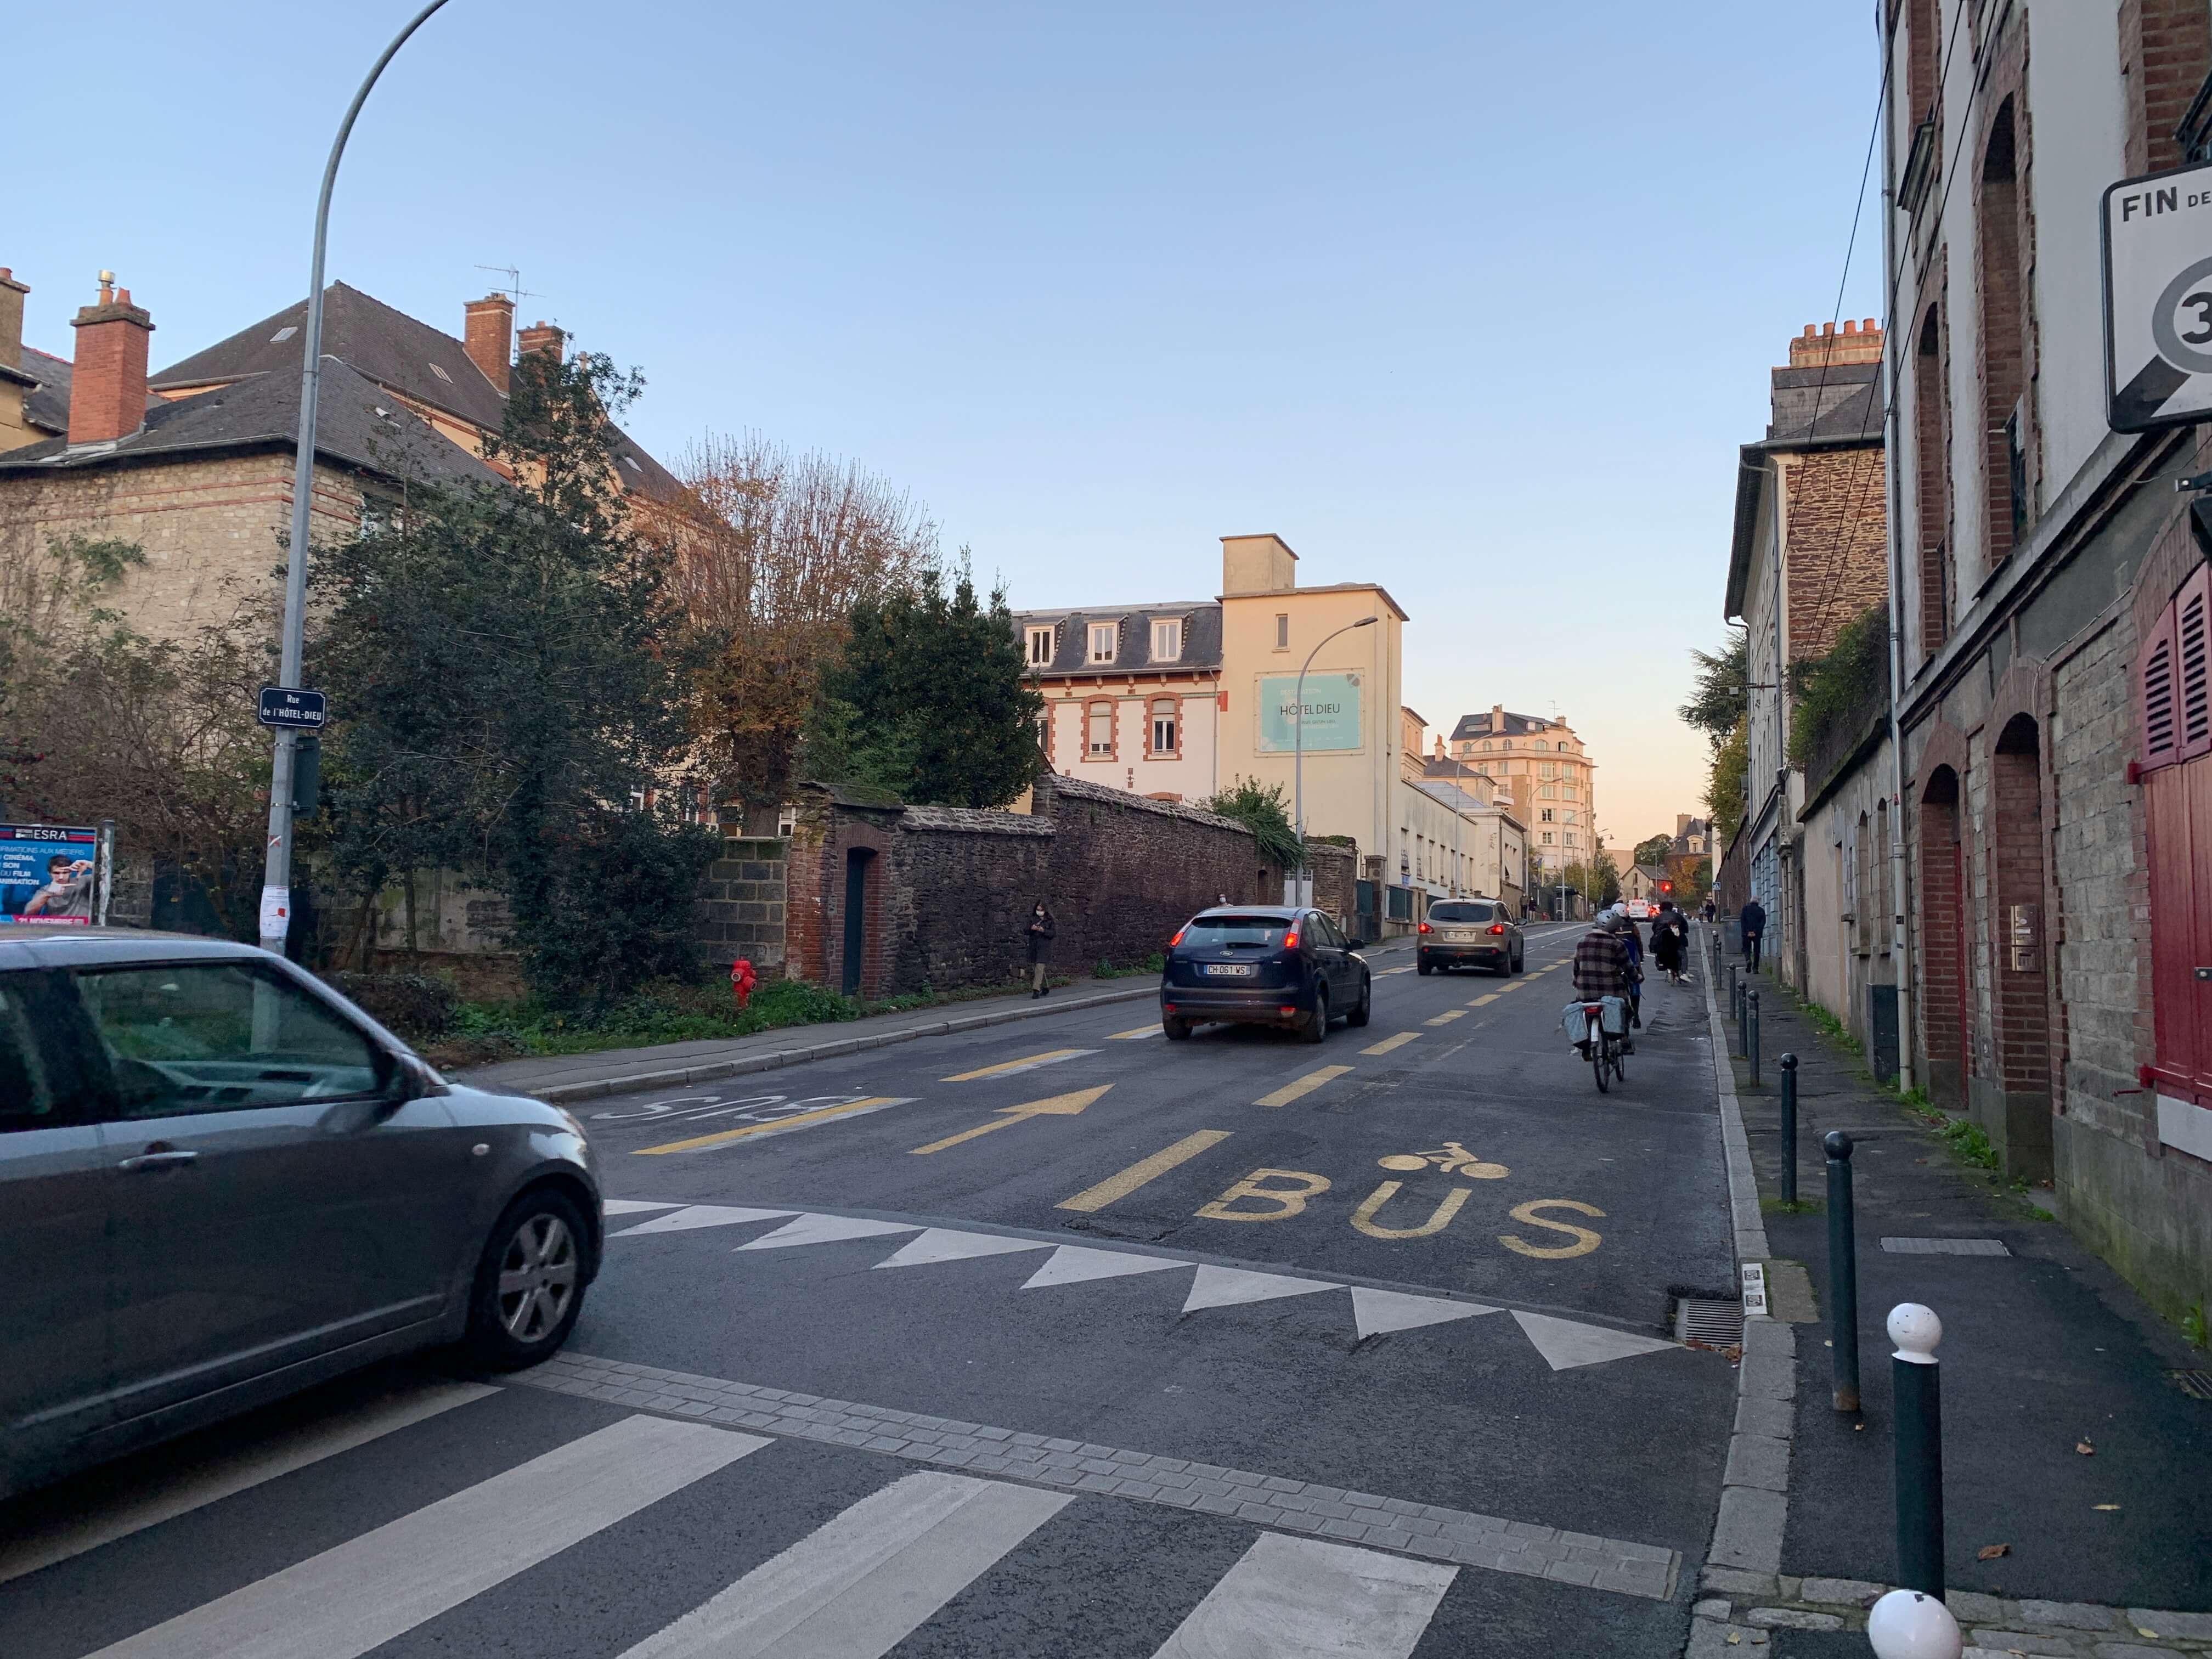 6 - Rue de l'Hôtel Dieu, Rennes, novembre 2020, crédit Nicolas Bourgeais (chercheur).jpeg